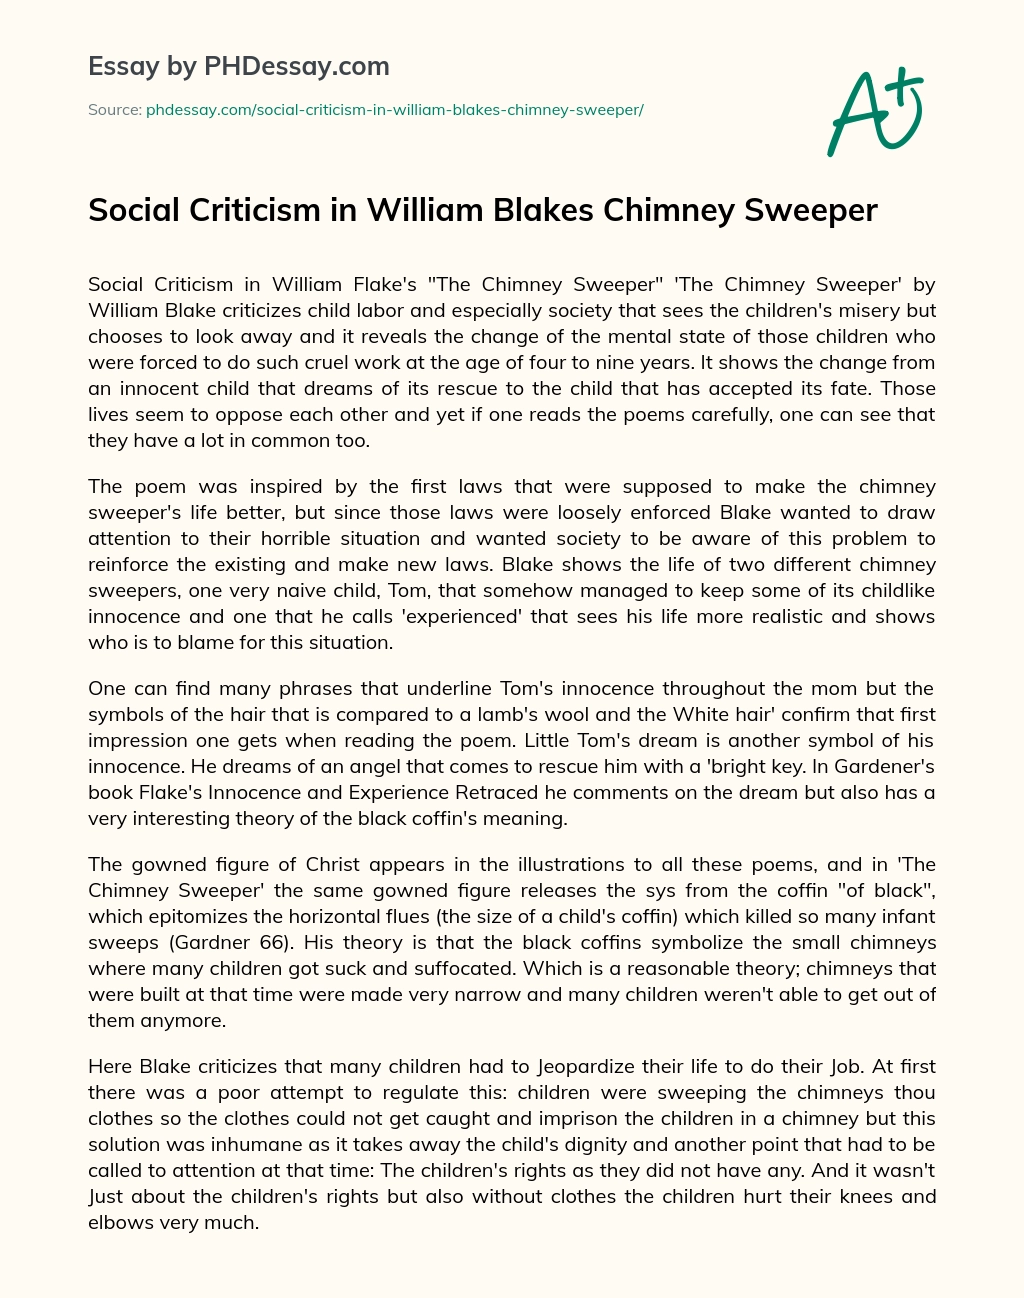 william blake criticism